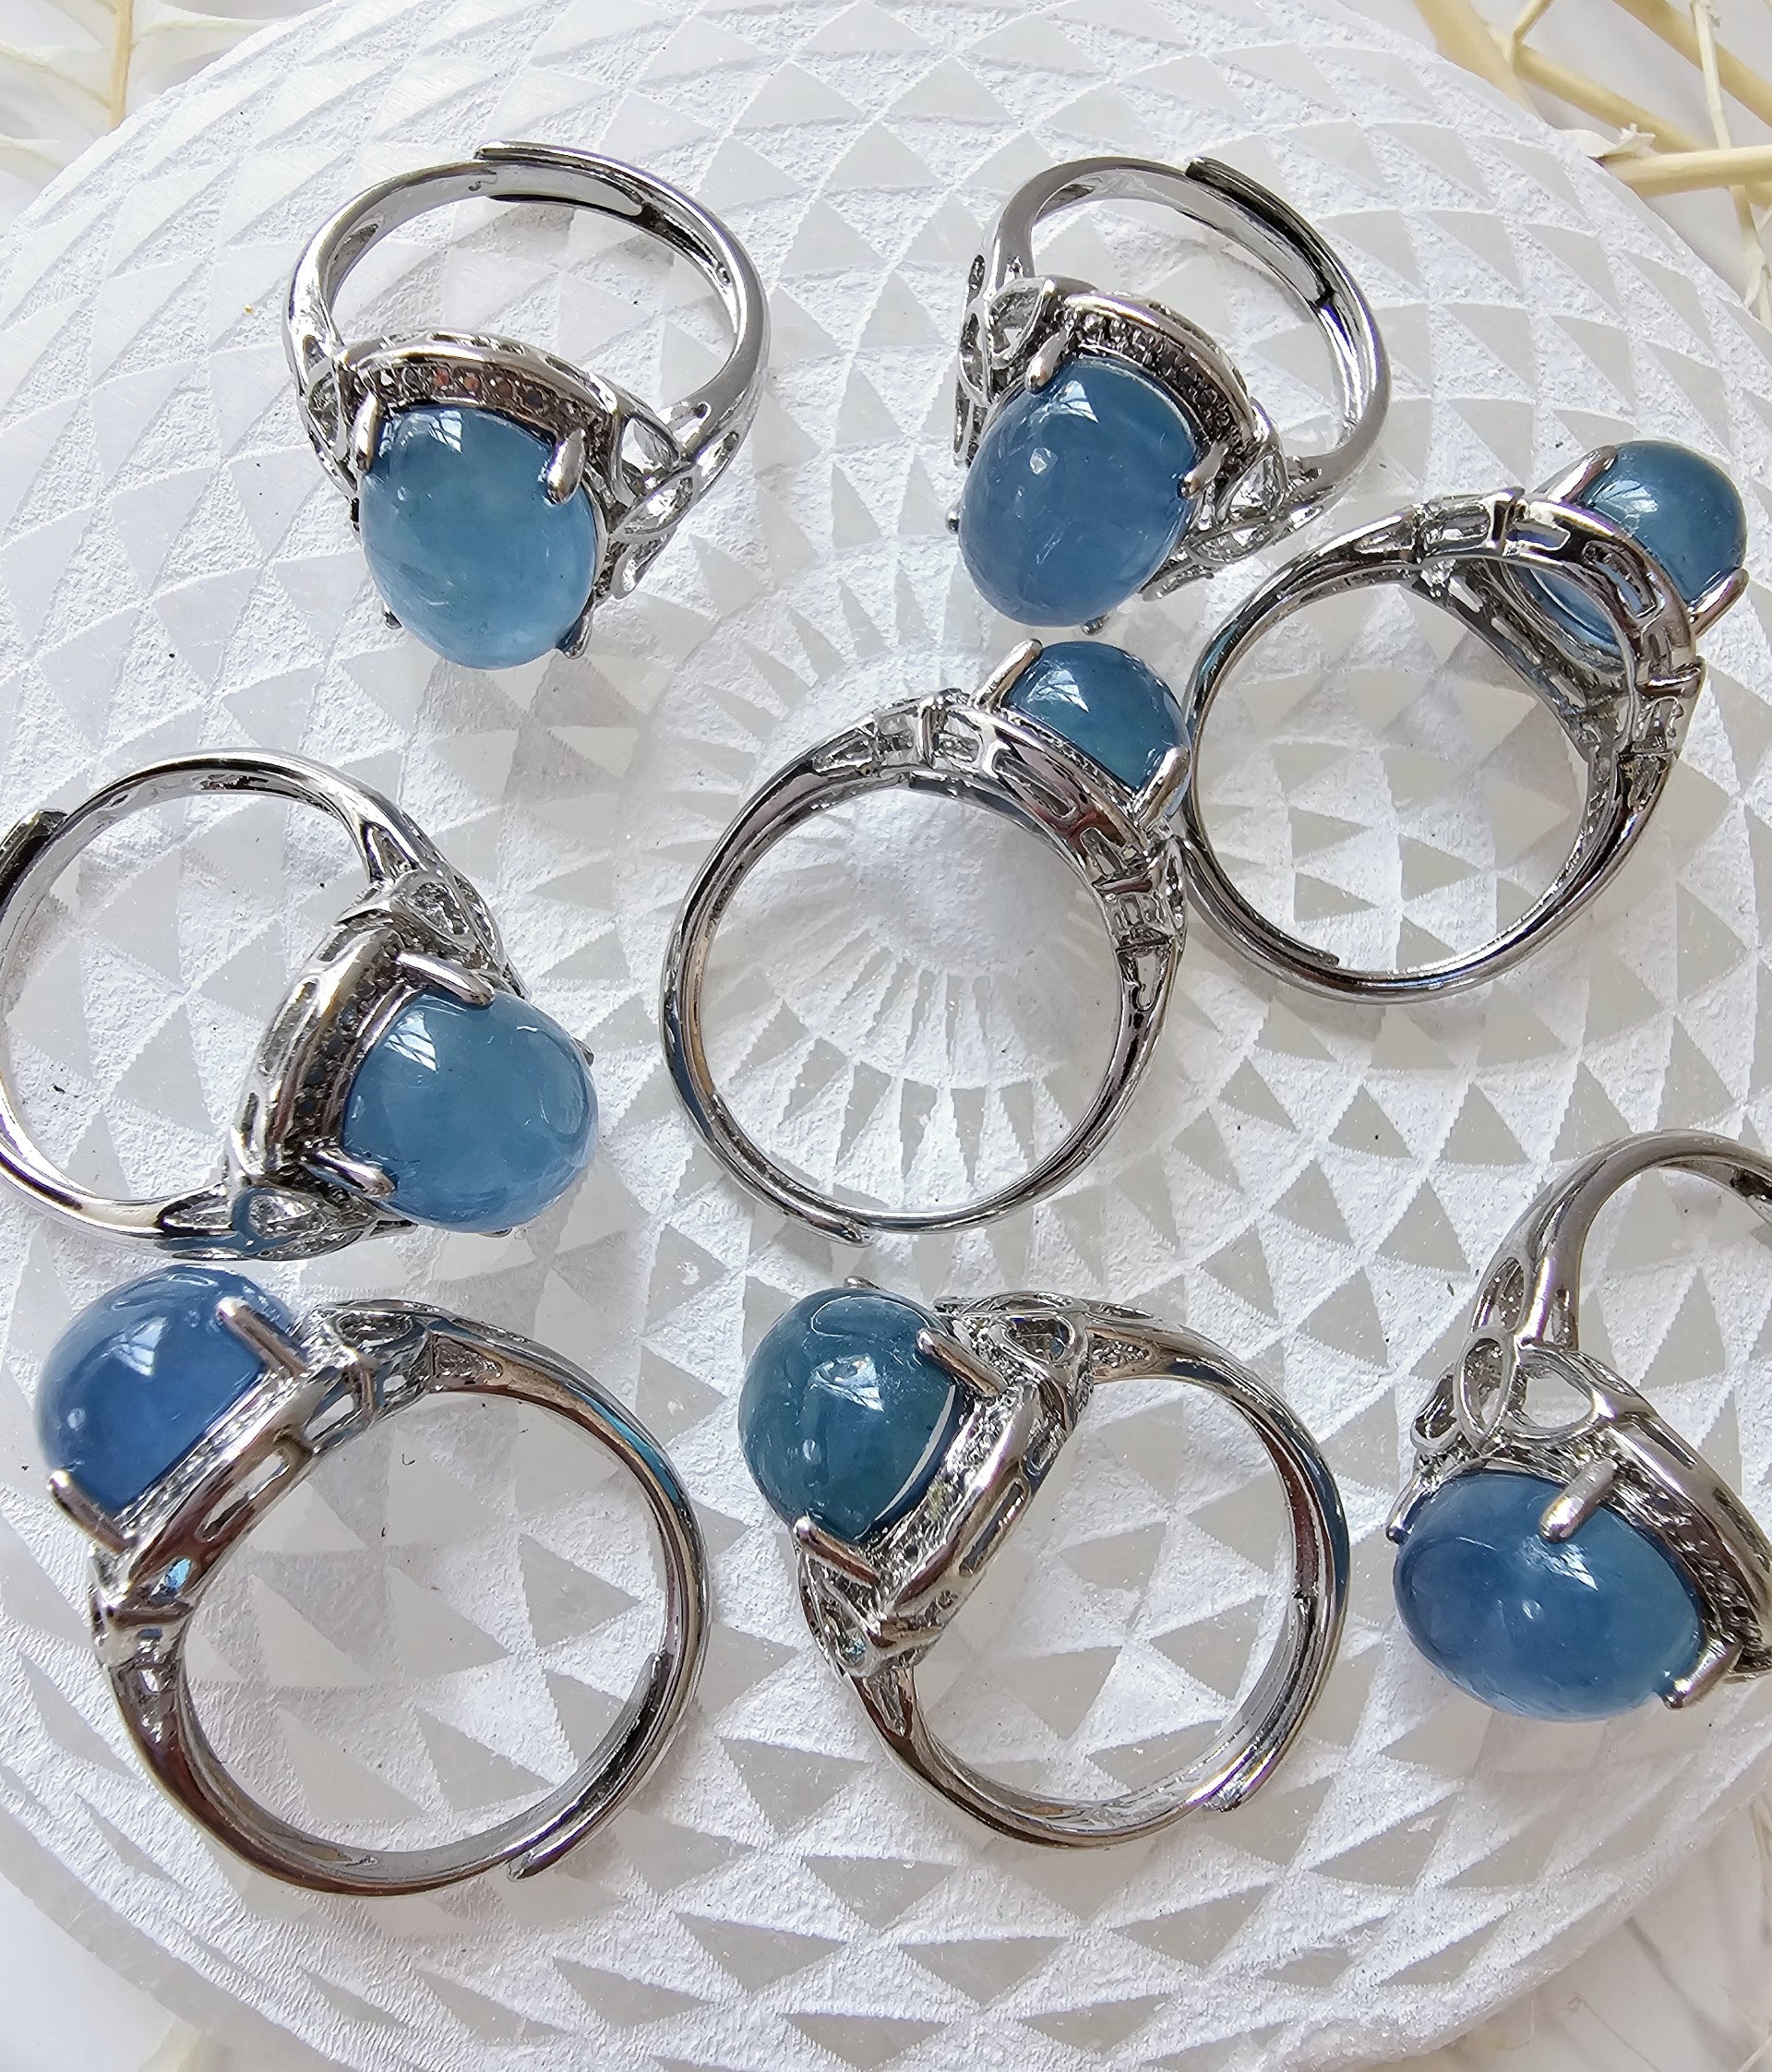 Aquamarine Oval Gemstone Adjustable Ring - Jewelry  from China Wholesaler